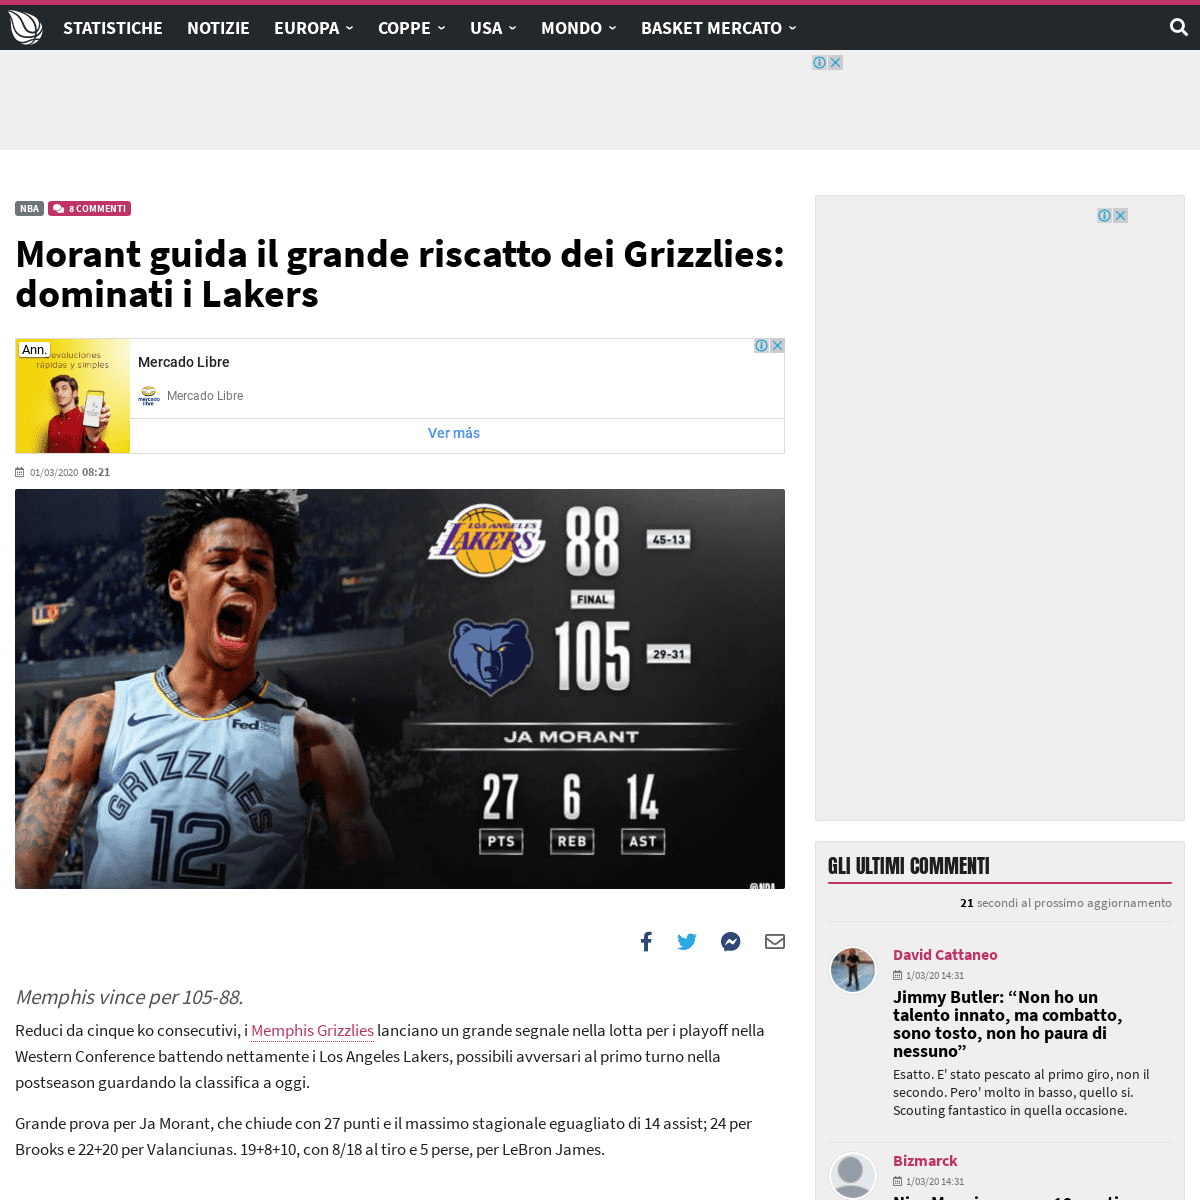 A complete backup of sportando.basketball/morant-guida-il-grande-riscatto-dei-grizzlies-dominati-i-lakers/